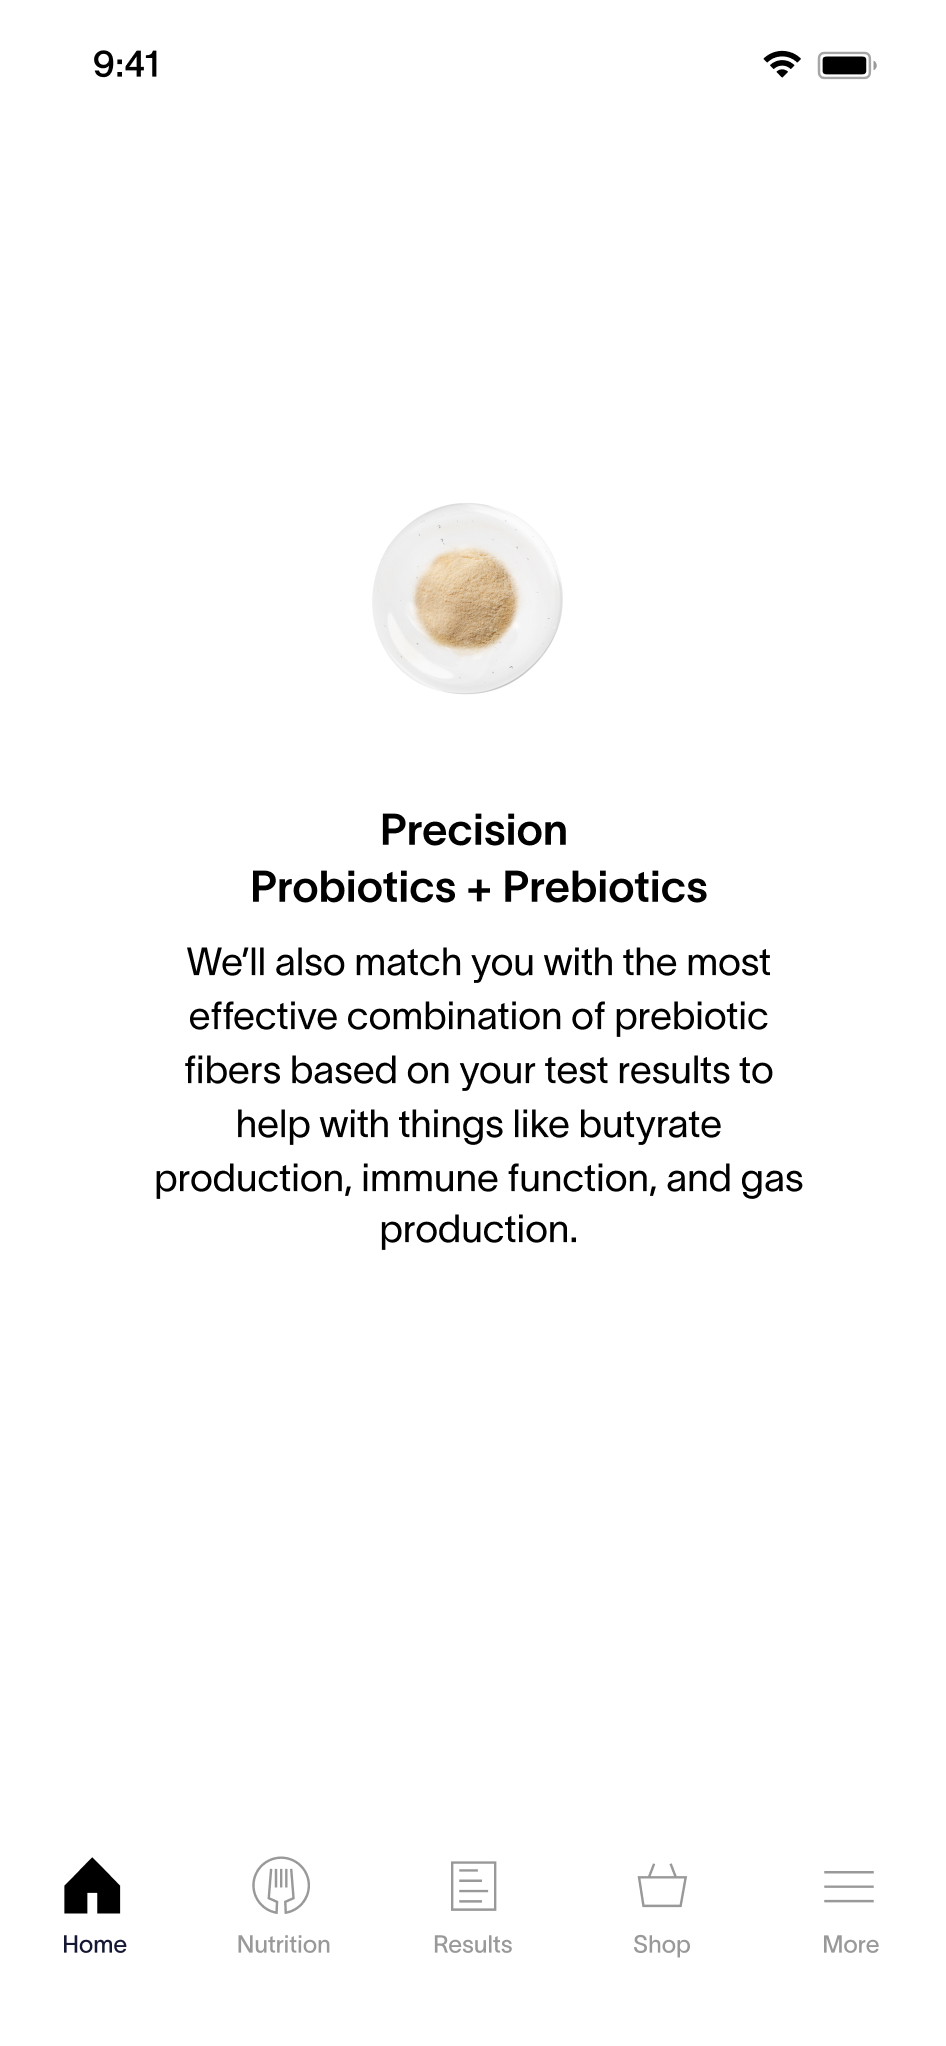 App Screen - Precision Probiotics + Prebiotics Recommendations